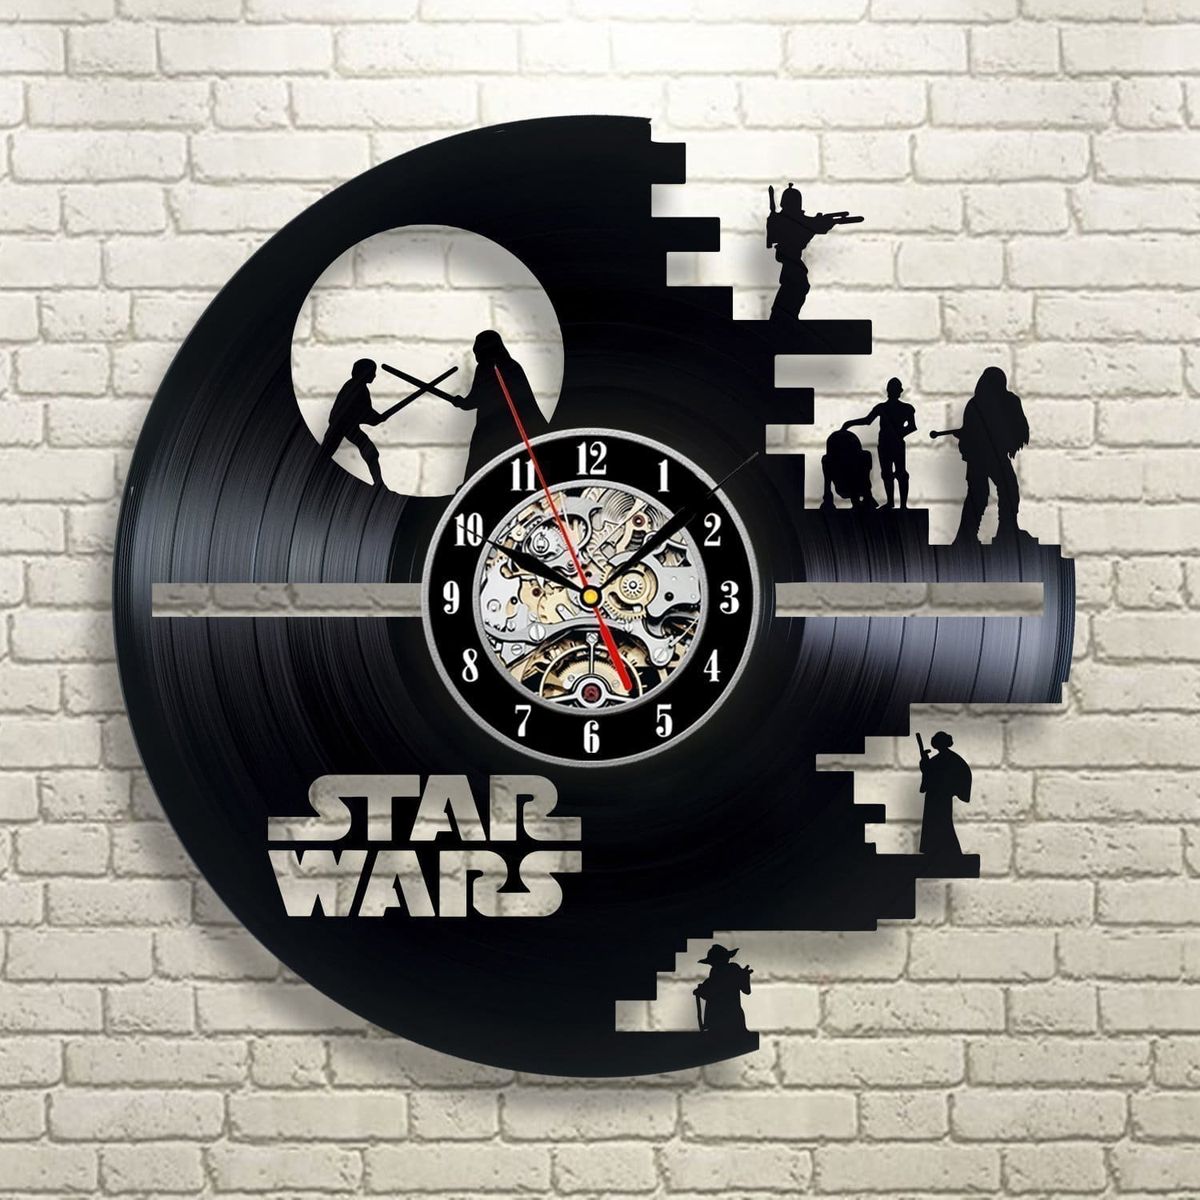 Diese Vinyl-Wanduhr ist eines der coolsten Star Wars-Geschenke